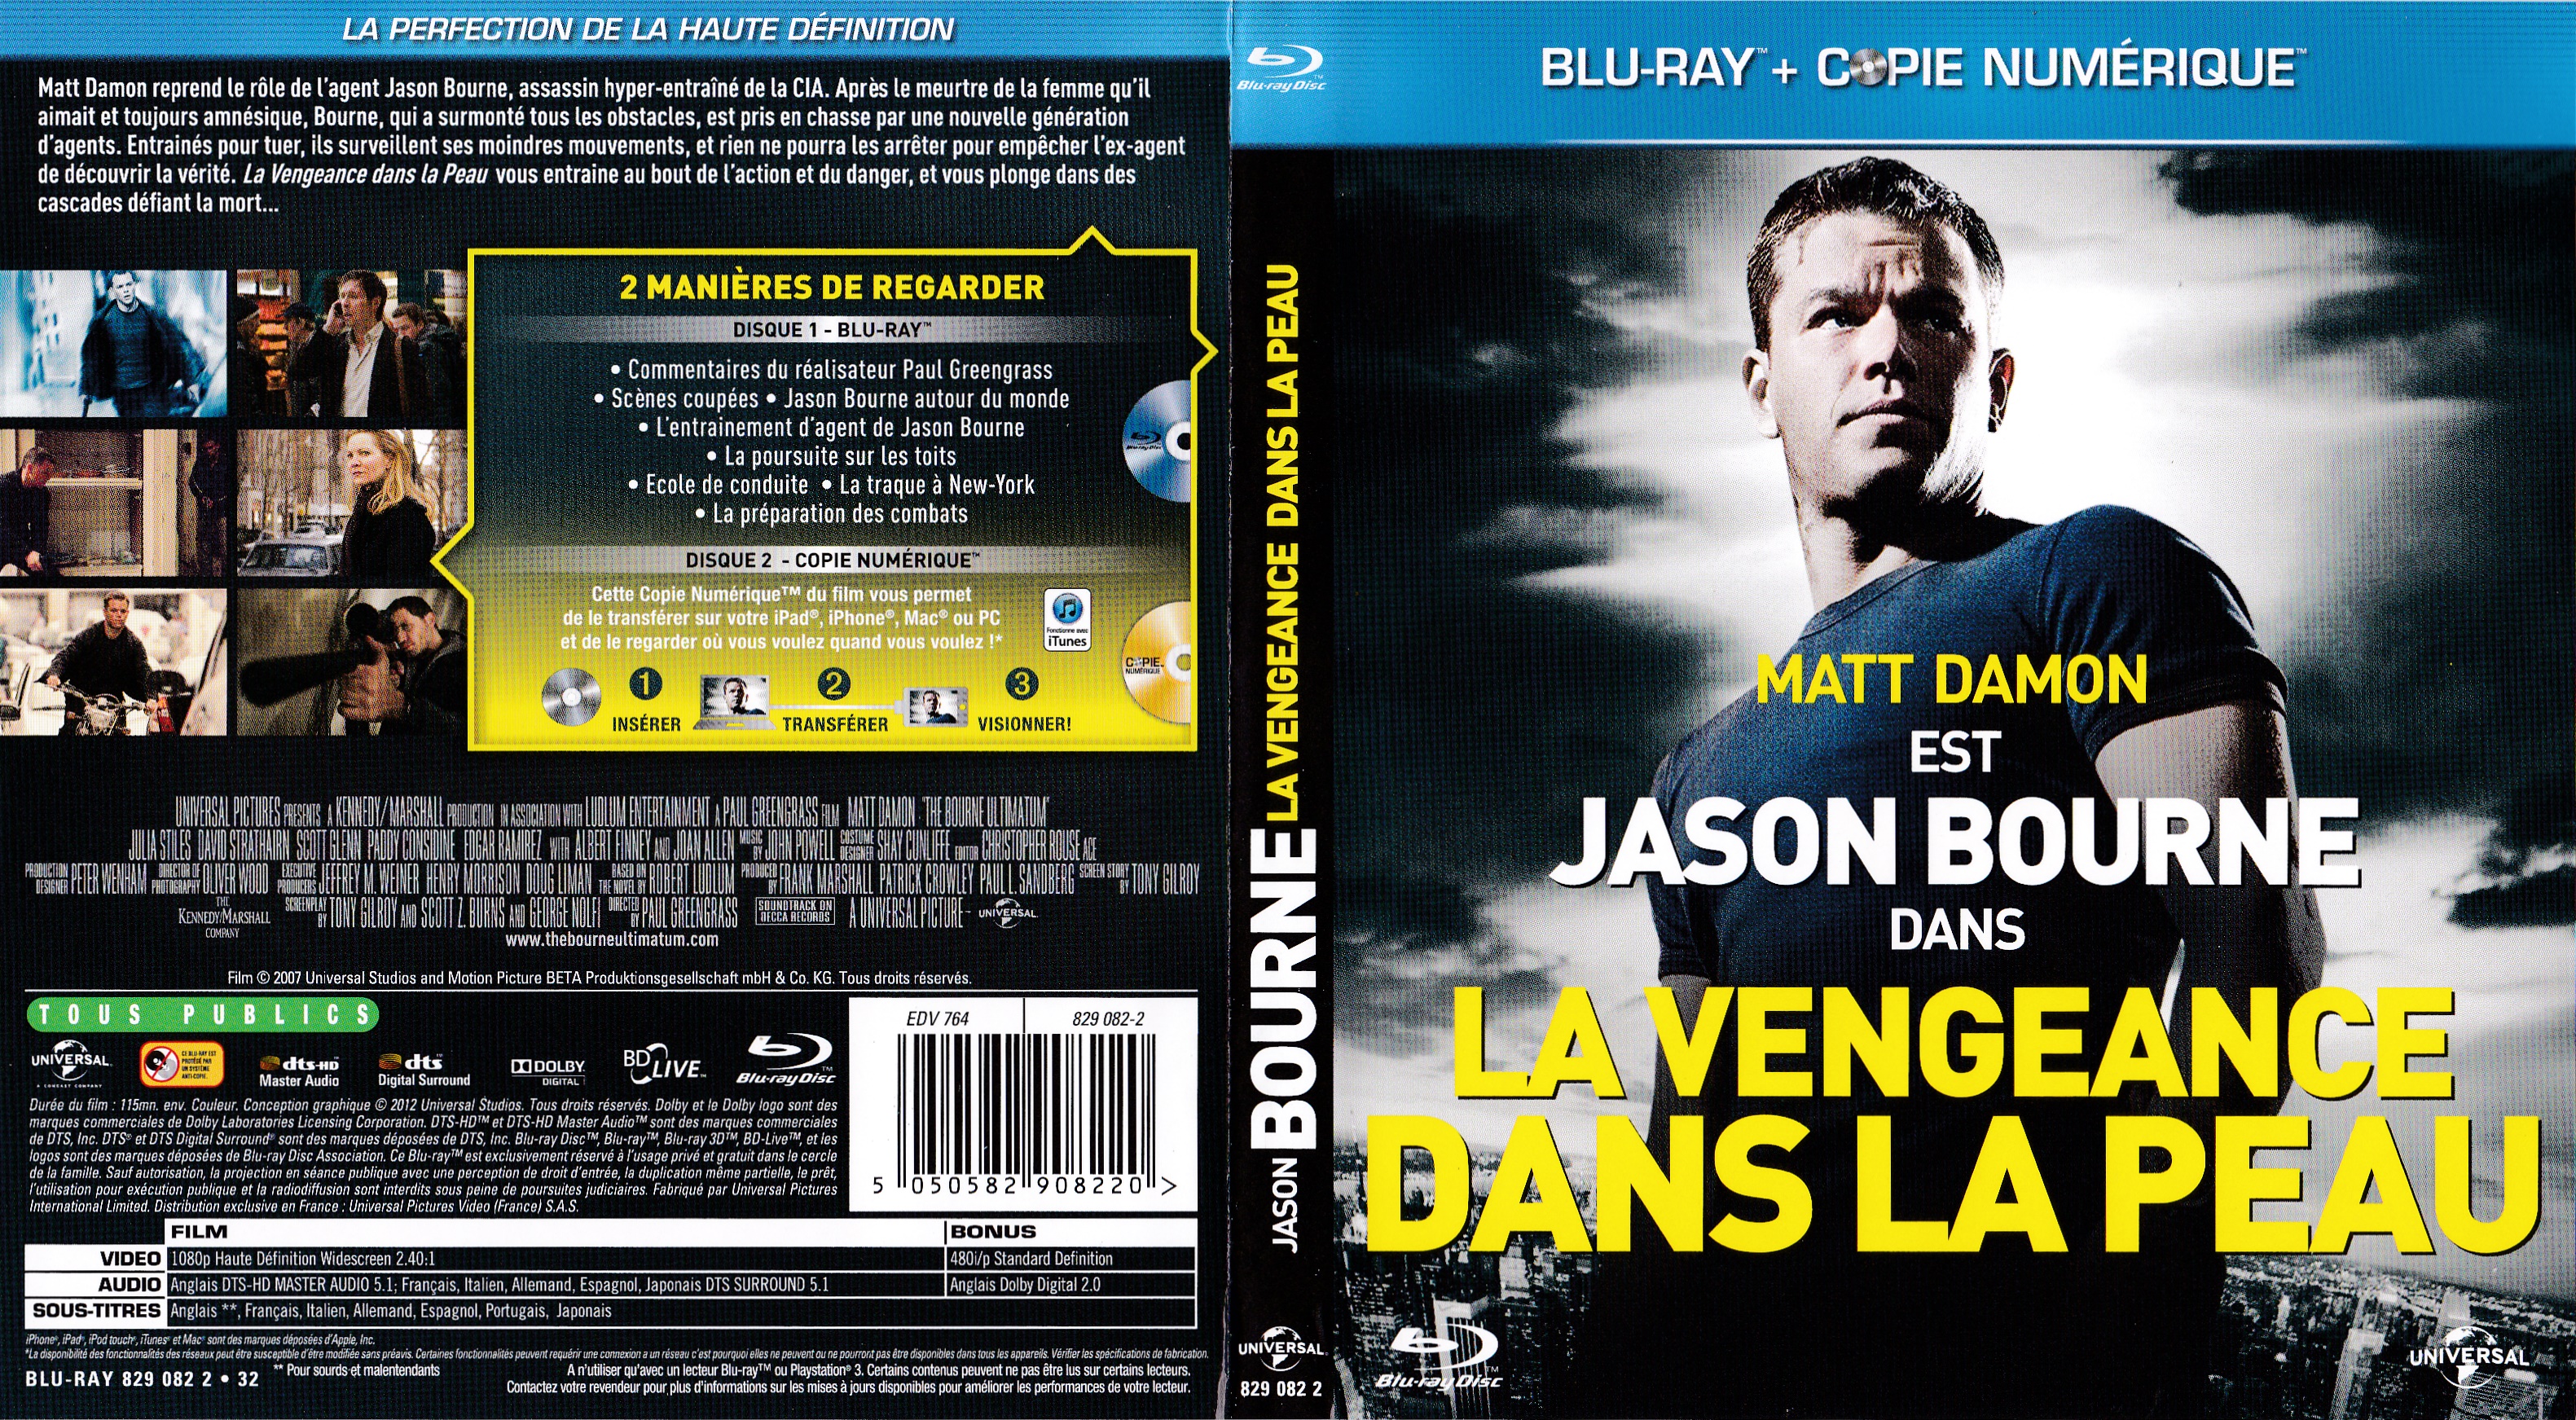 Jaquette DVD La vengeance dans la peau (BLU-RAY) v2